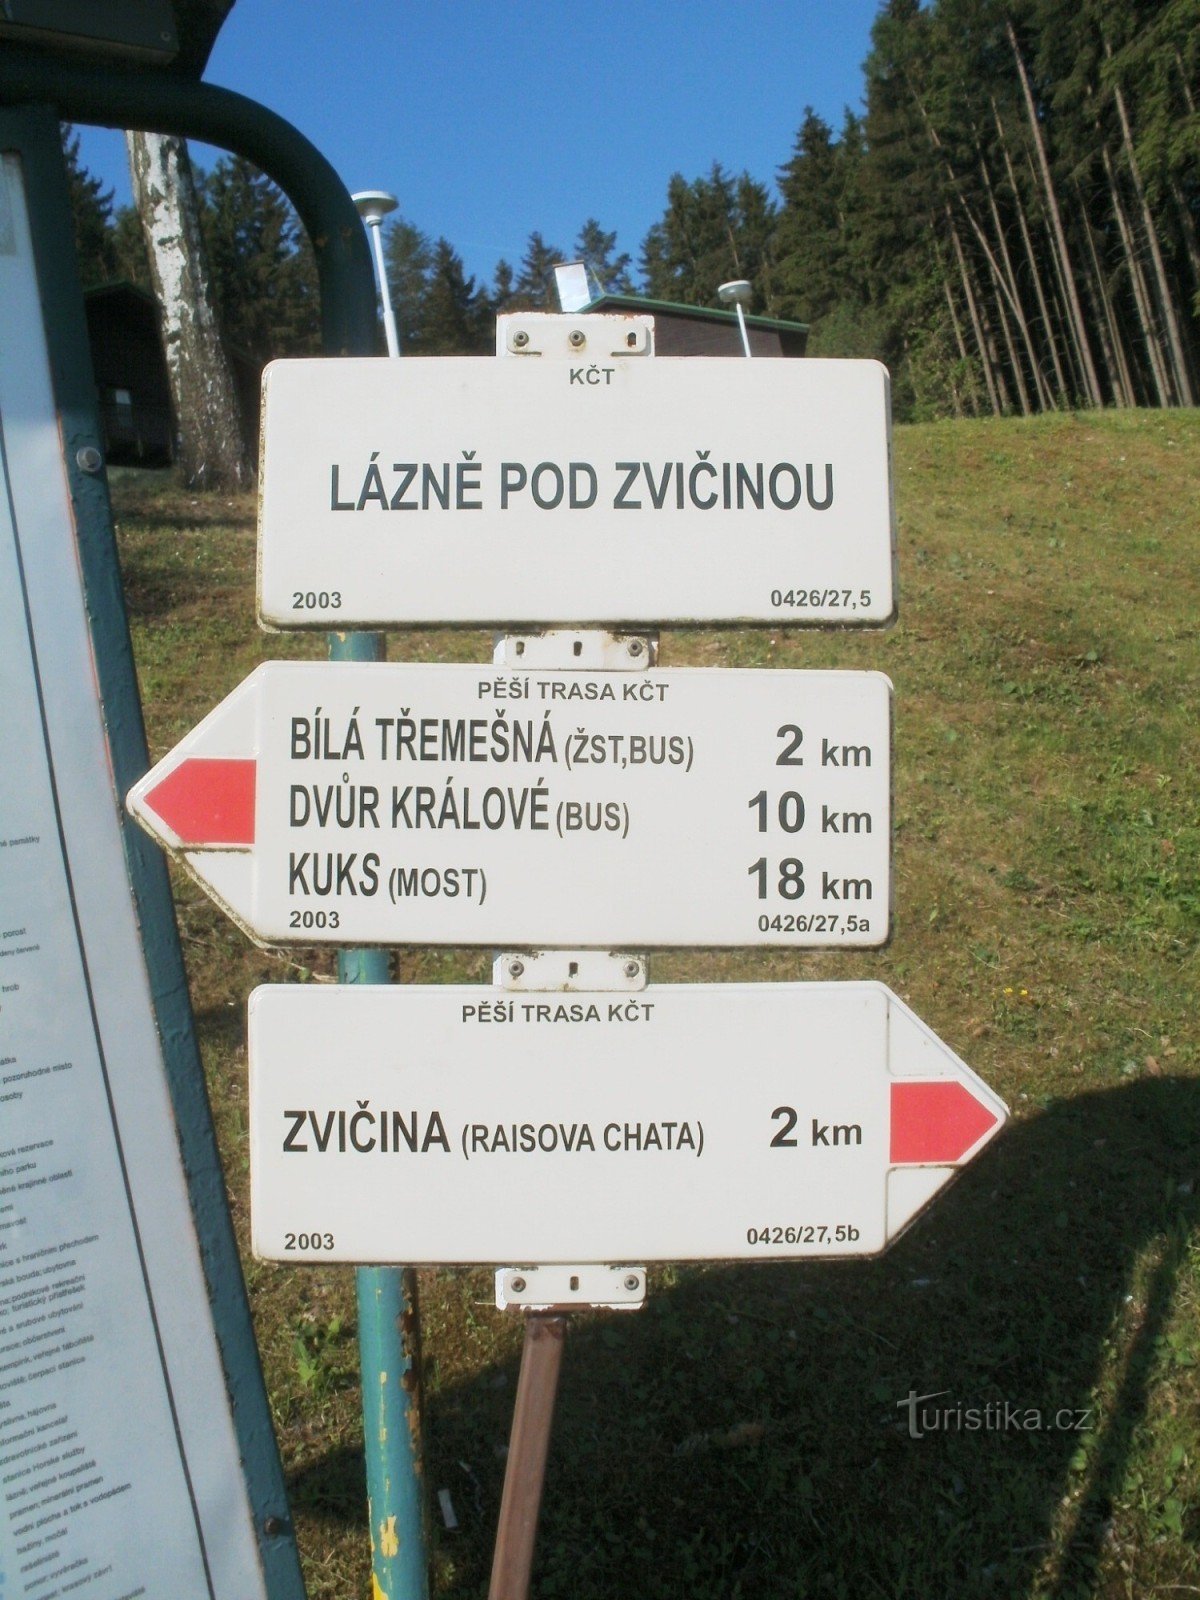 o cruzamento turístico de Lázně pod Zvičinou